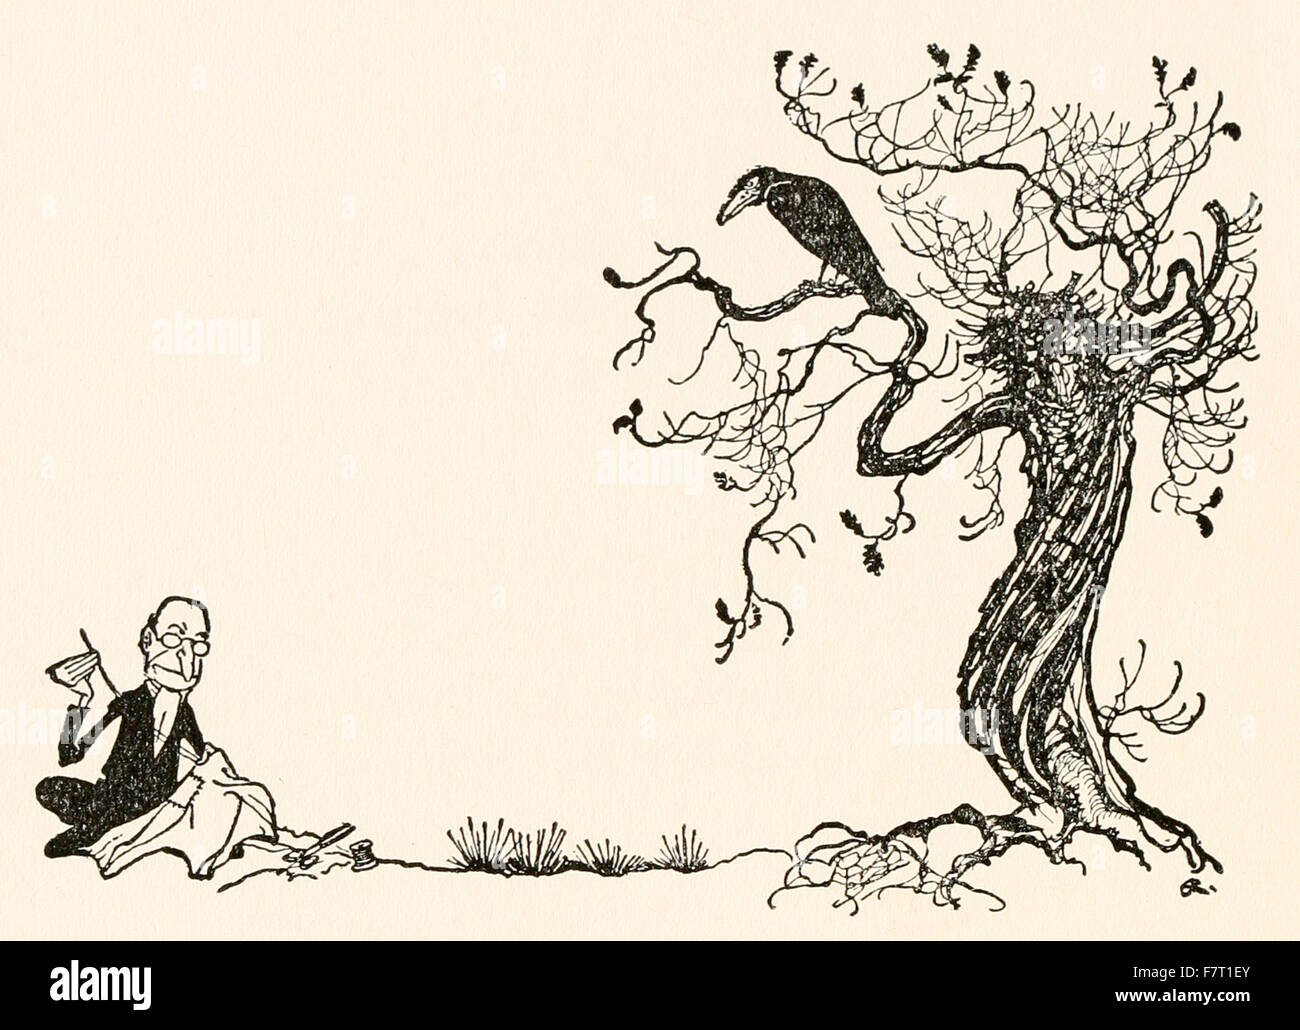 "Eine AAS-Krähe saß auf einer Eiche," von "Mother Goose - die alte Kinderreime" Illustration von Arthur Rackham (1867-1939). Siehe Beschreibung für mehr Informationen. Stockfoto